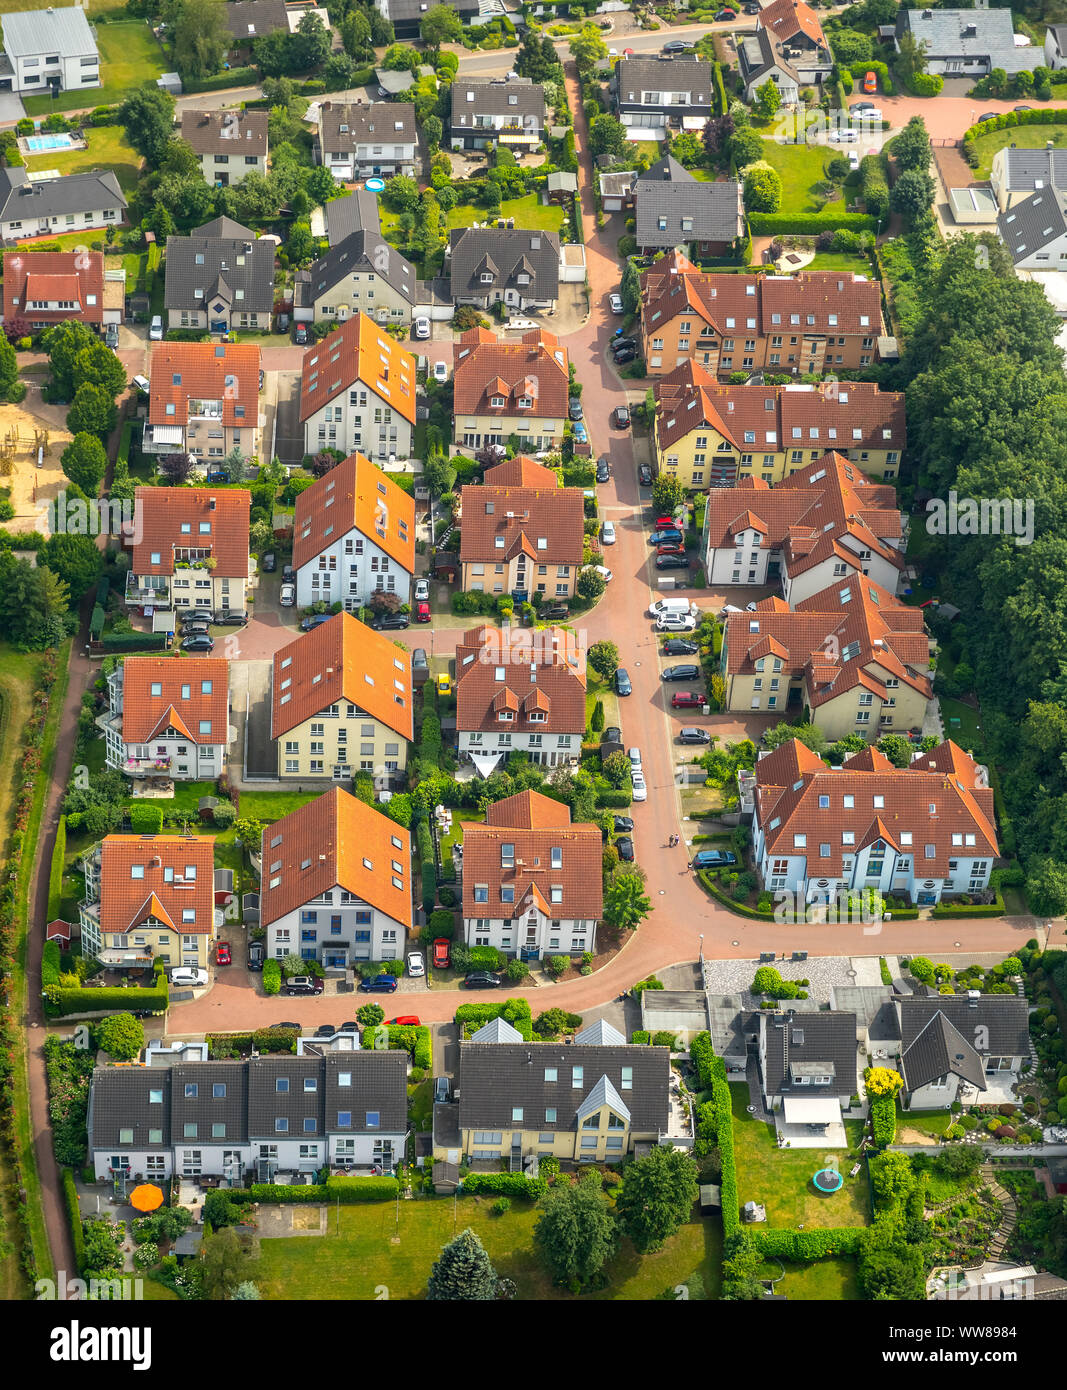 Luftaufnahme, Wohnsiedlung Uhlenkotten neben der alten Heidehof in Niederwenigern, Hattingen, Ruhrgebiet, Nordrhein-Westfalen, Deutschland Stockfoto